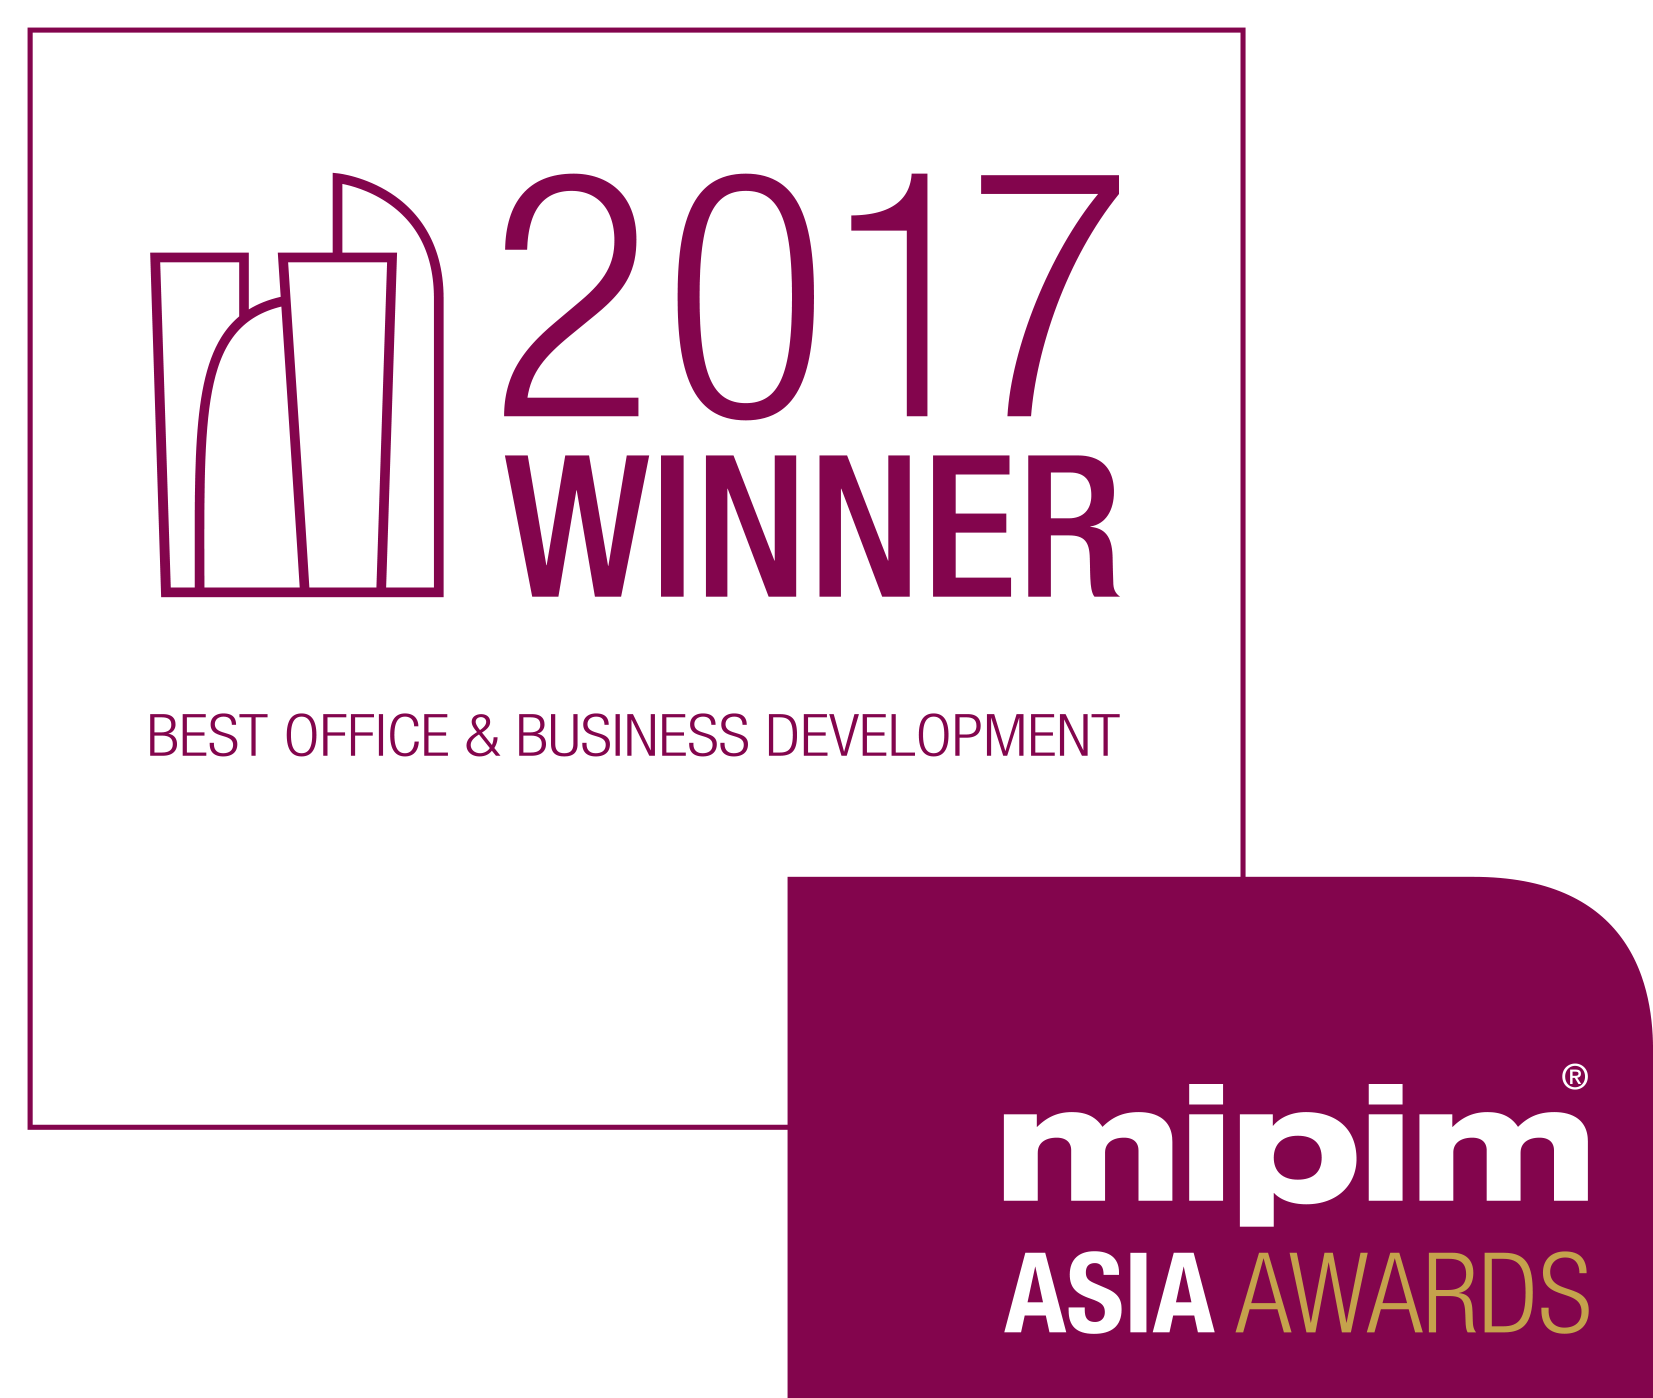 MIPIM Asia Awards 2017